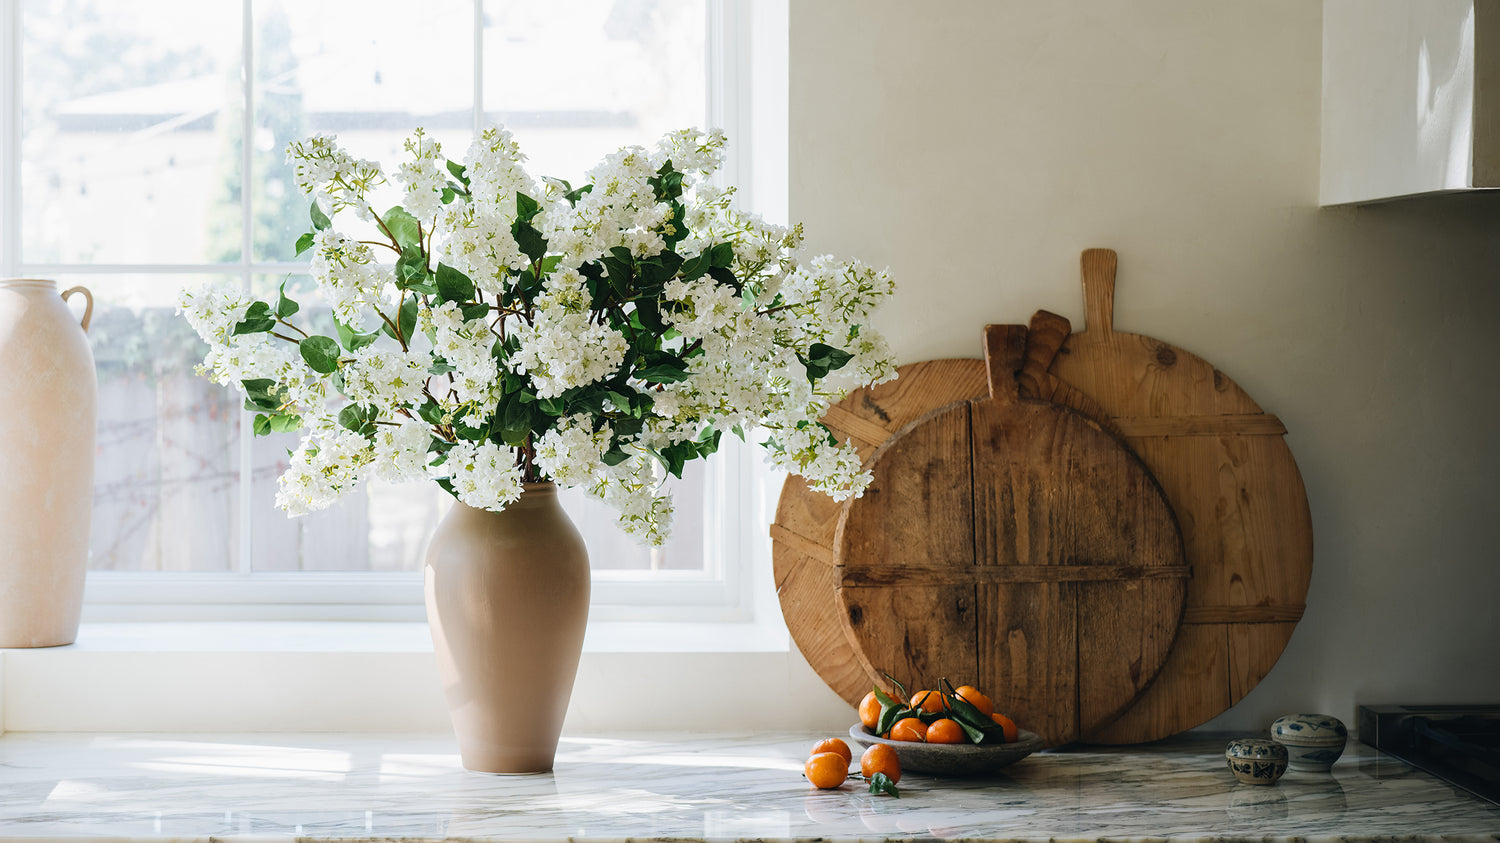 Manzanita Branch with Afloral Handle Vase